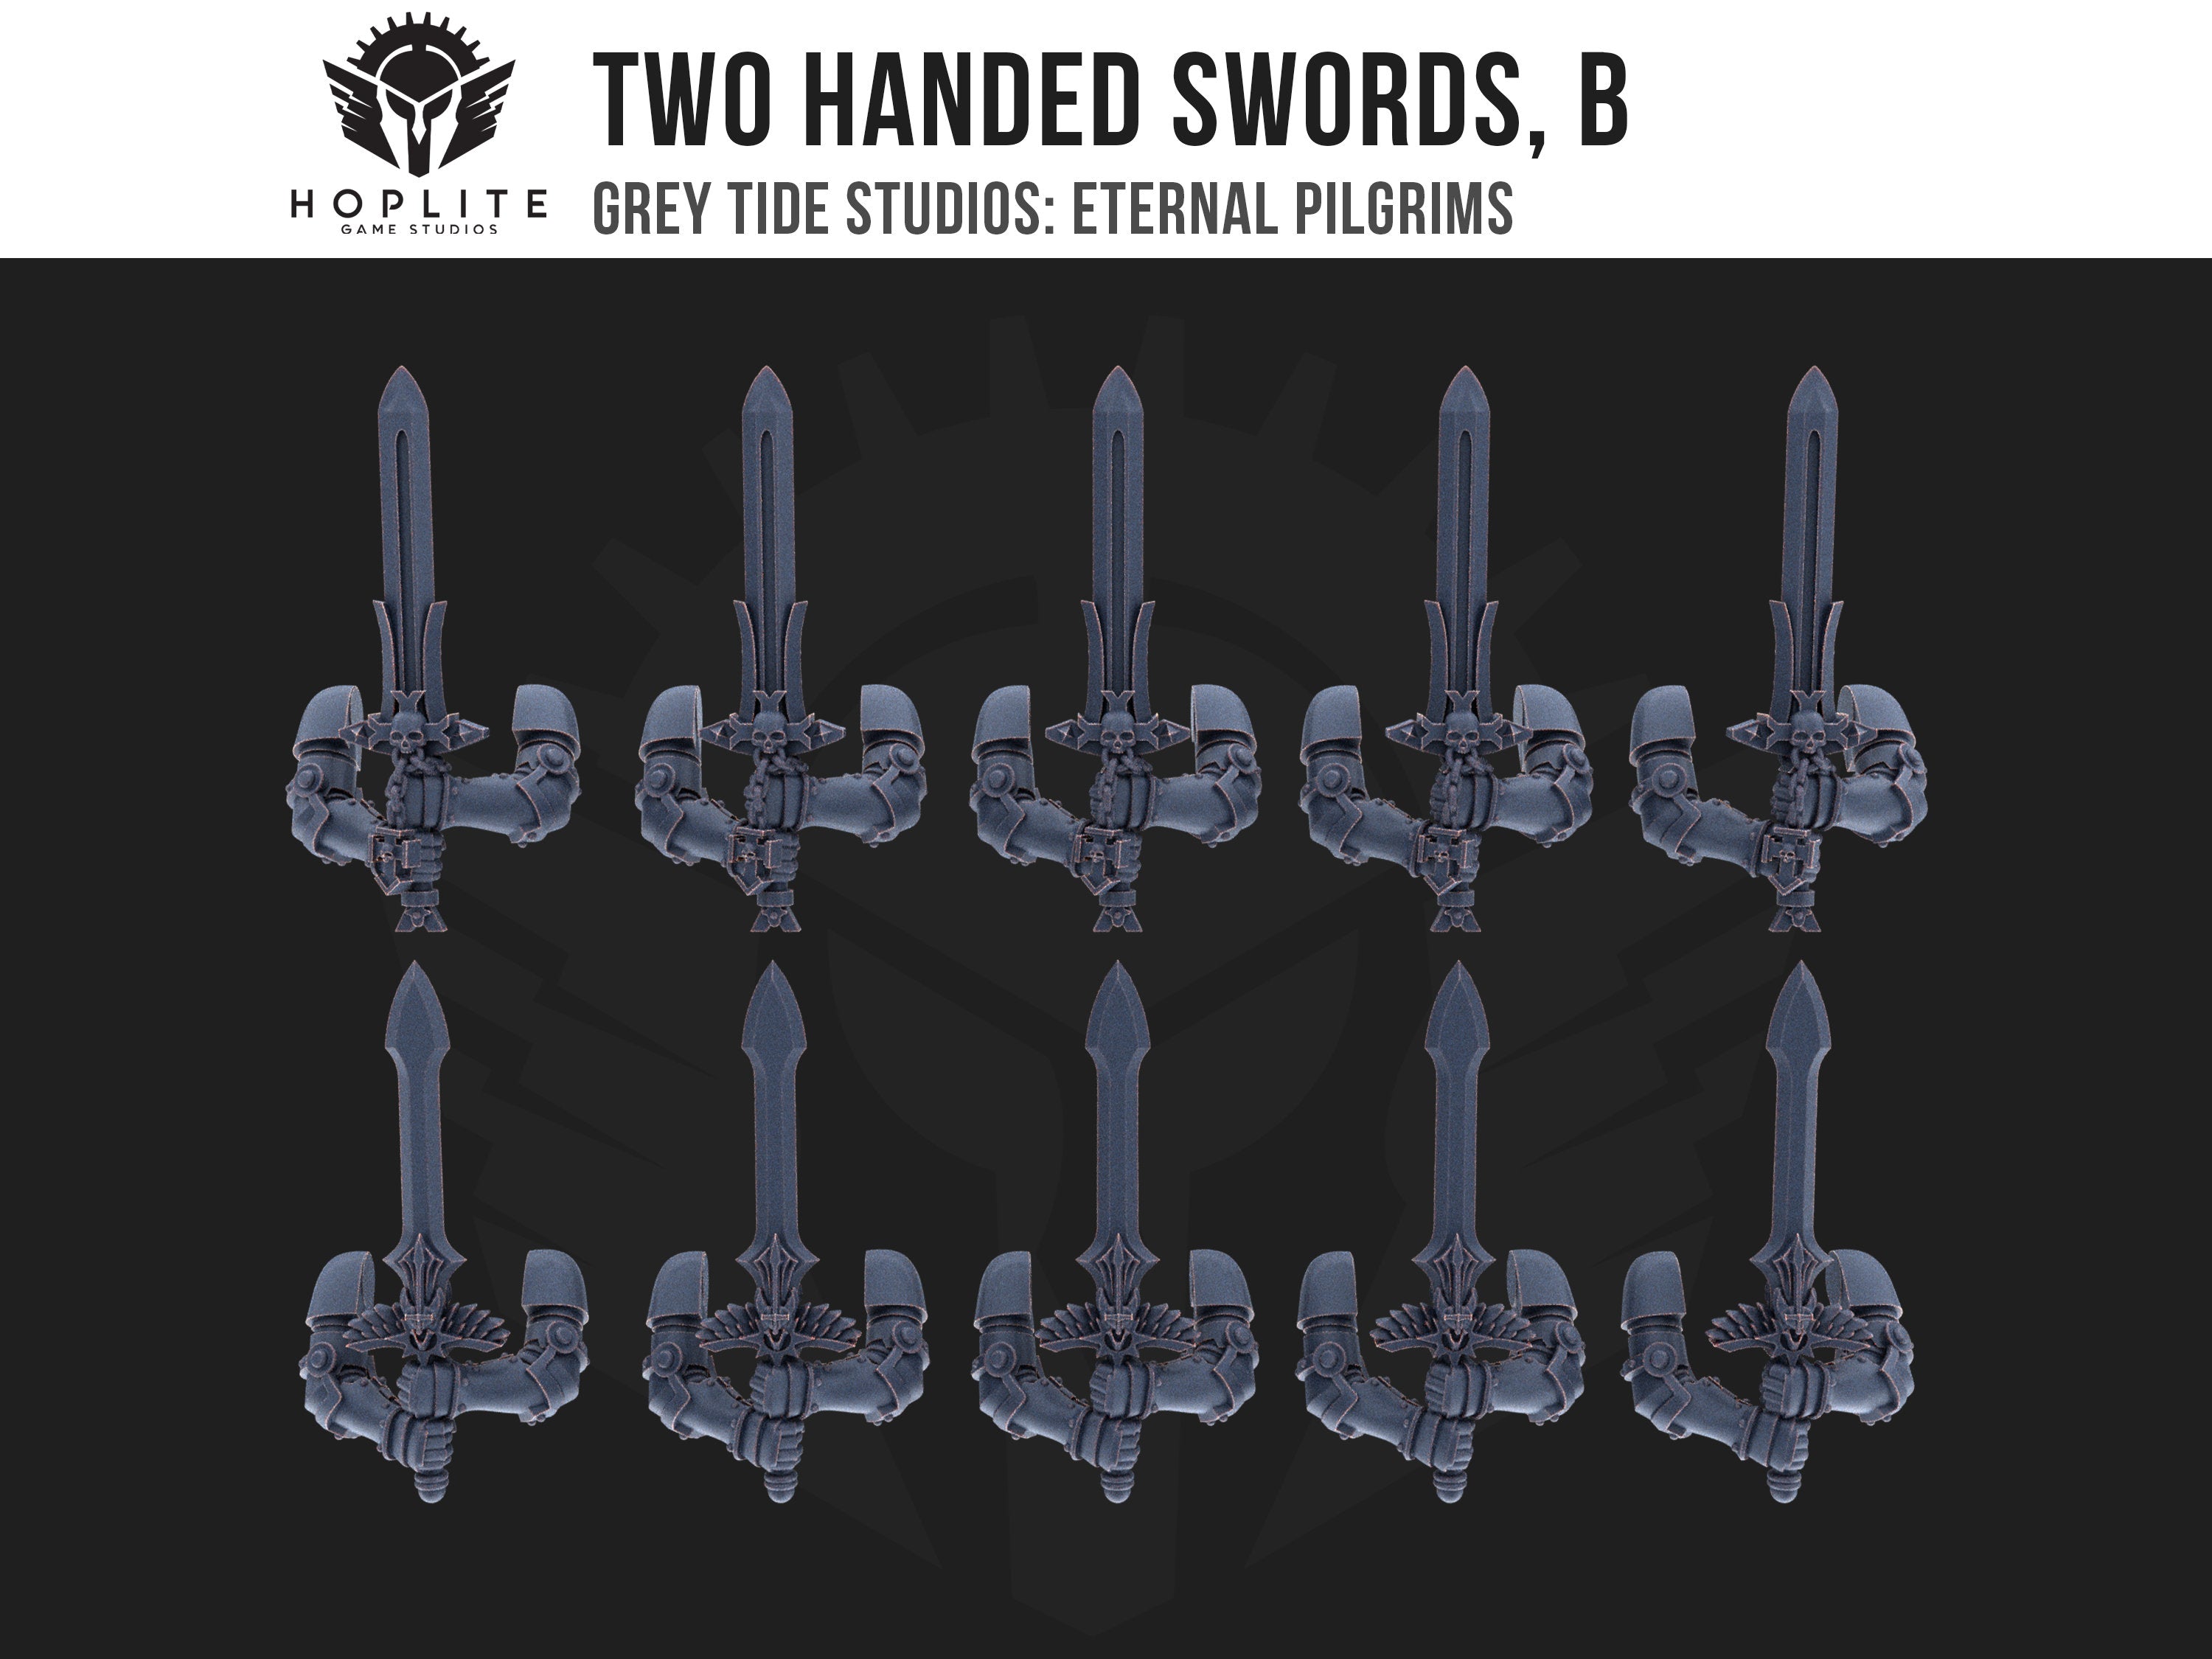 Espadas de dos manos, B (x10) | Estudios de marea gris | Peregrinos eternos | Piezas y brocas de conversión